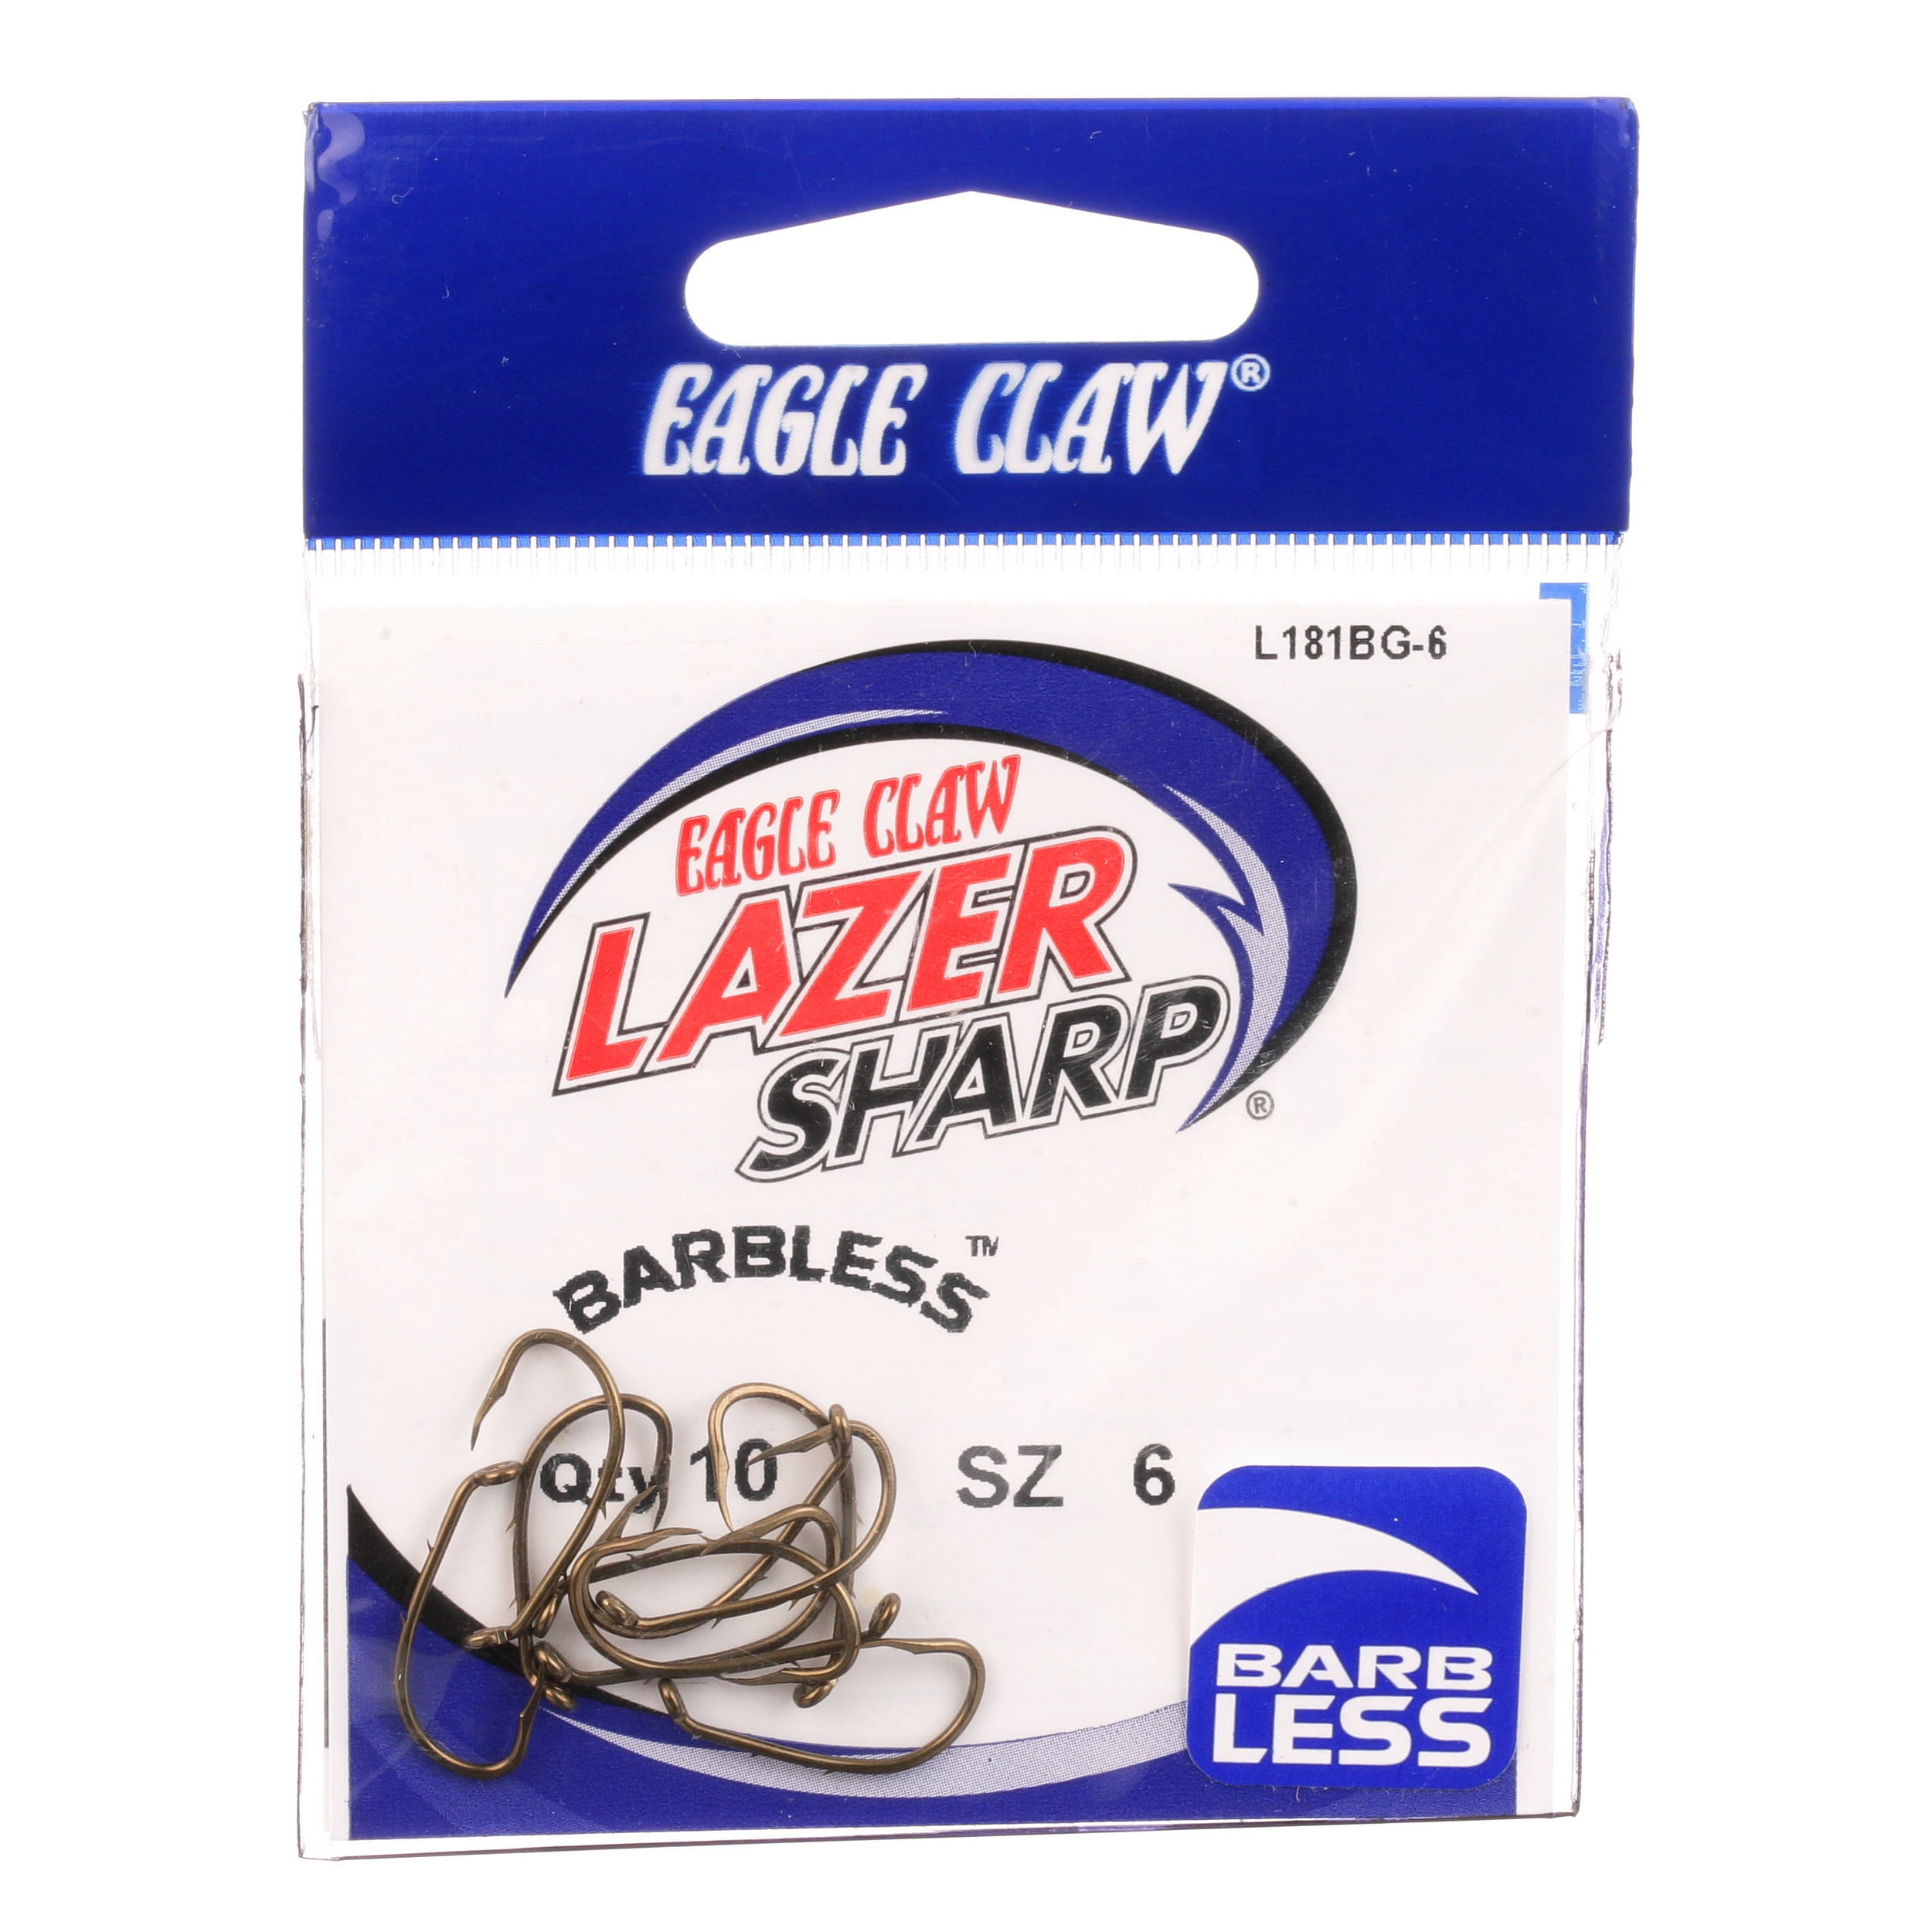 Eagle Claw Lazer Sharp Barbless Baitholder Fishing Hook, Bronze 